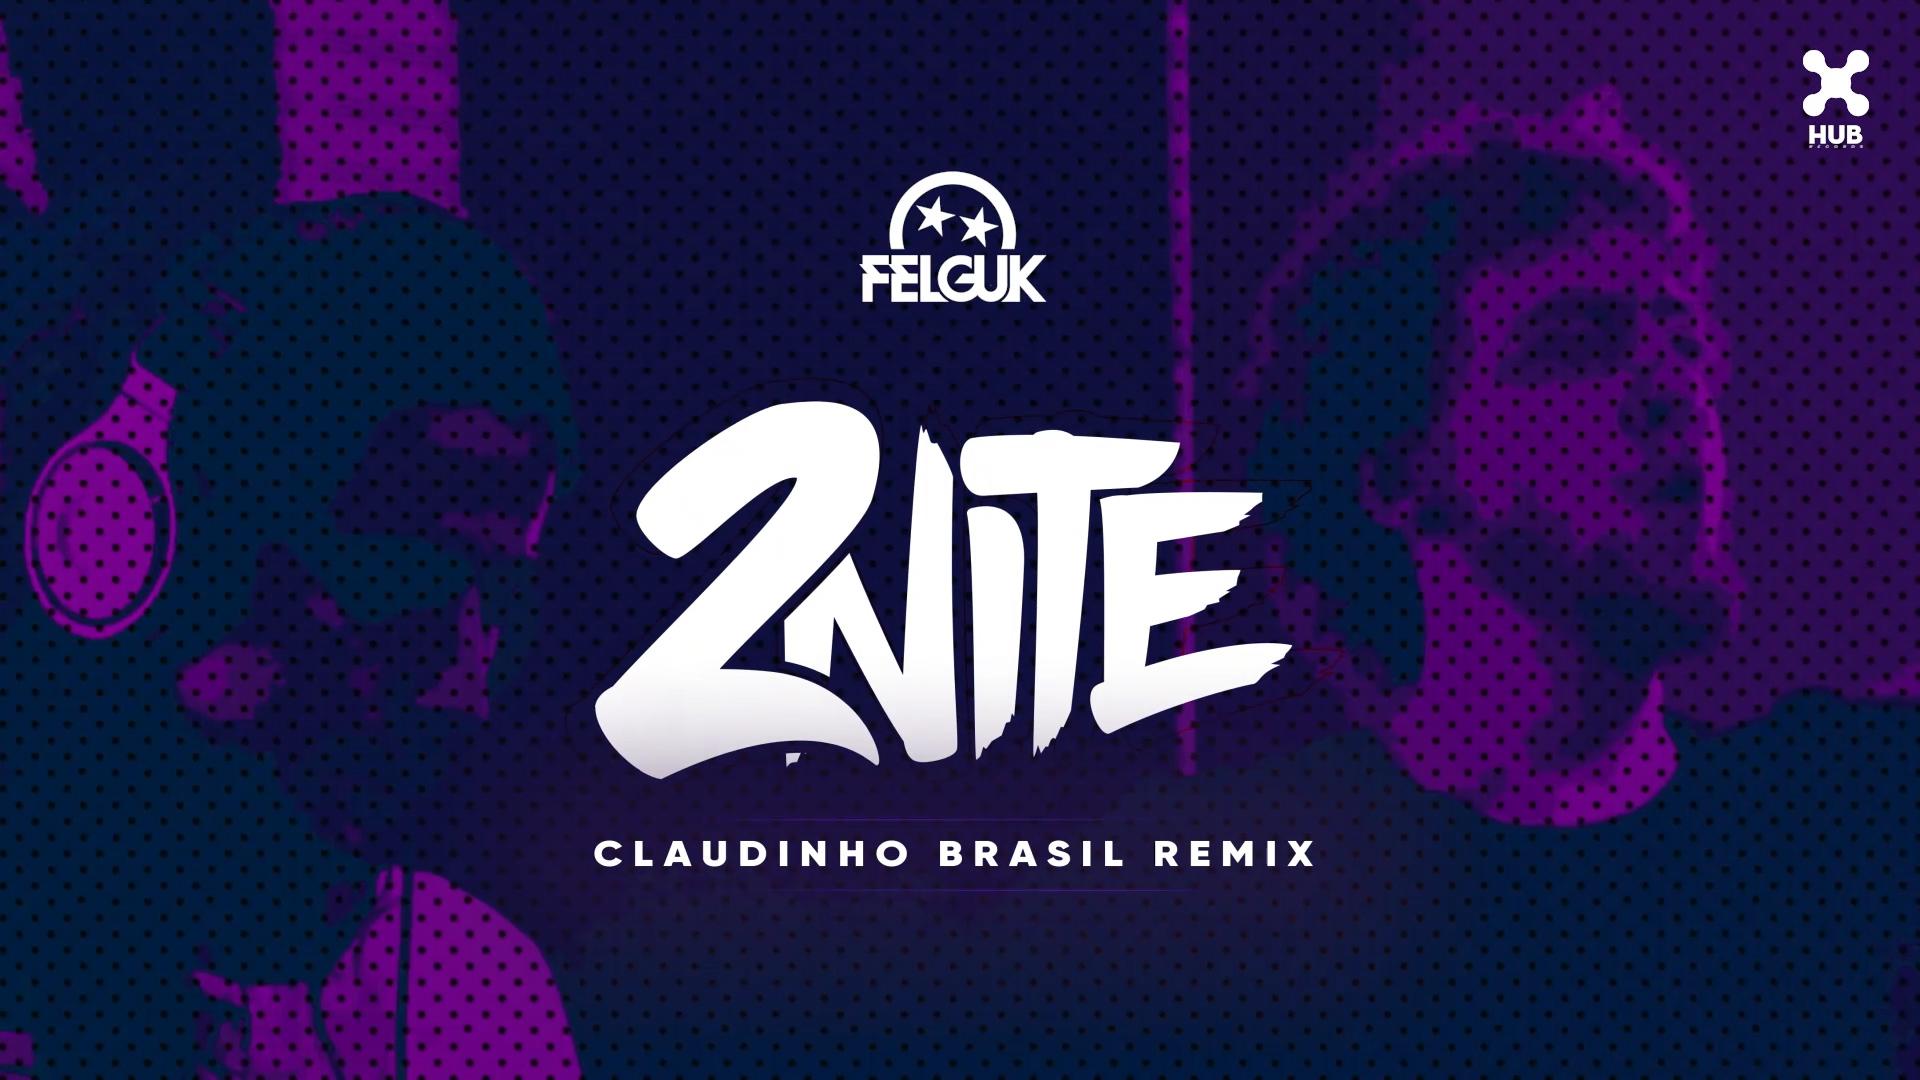 Felguk - 2nite (Claudinho Brasil Remix) (Áudio Oficial)